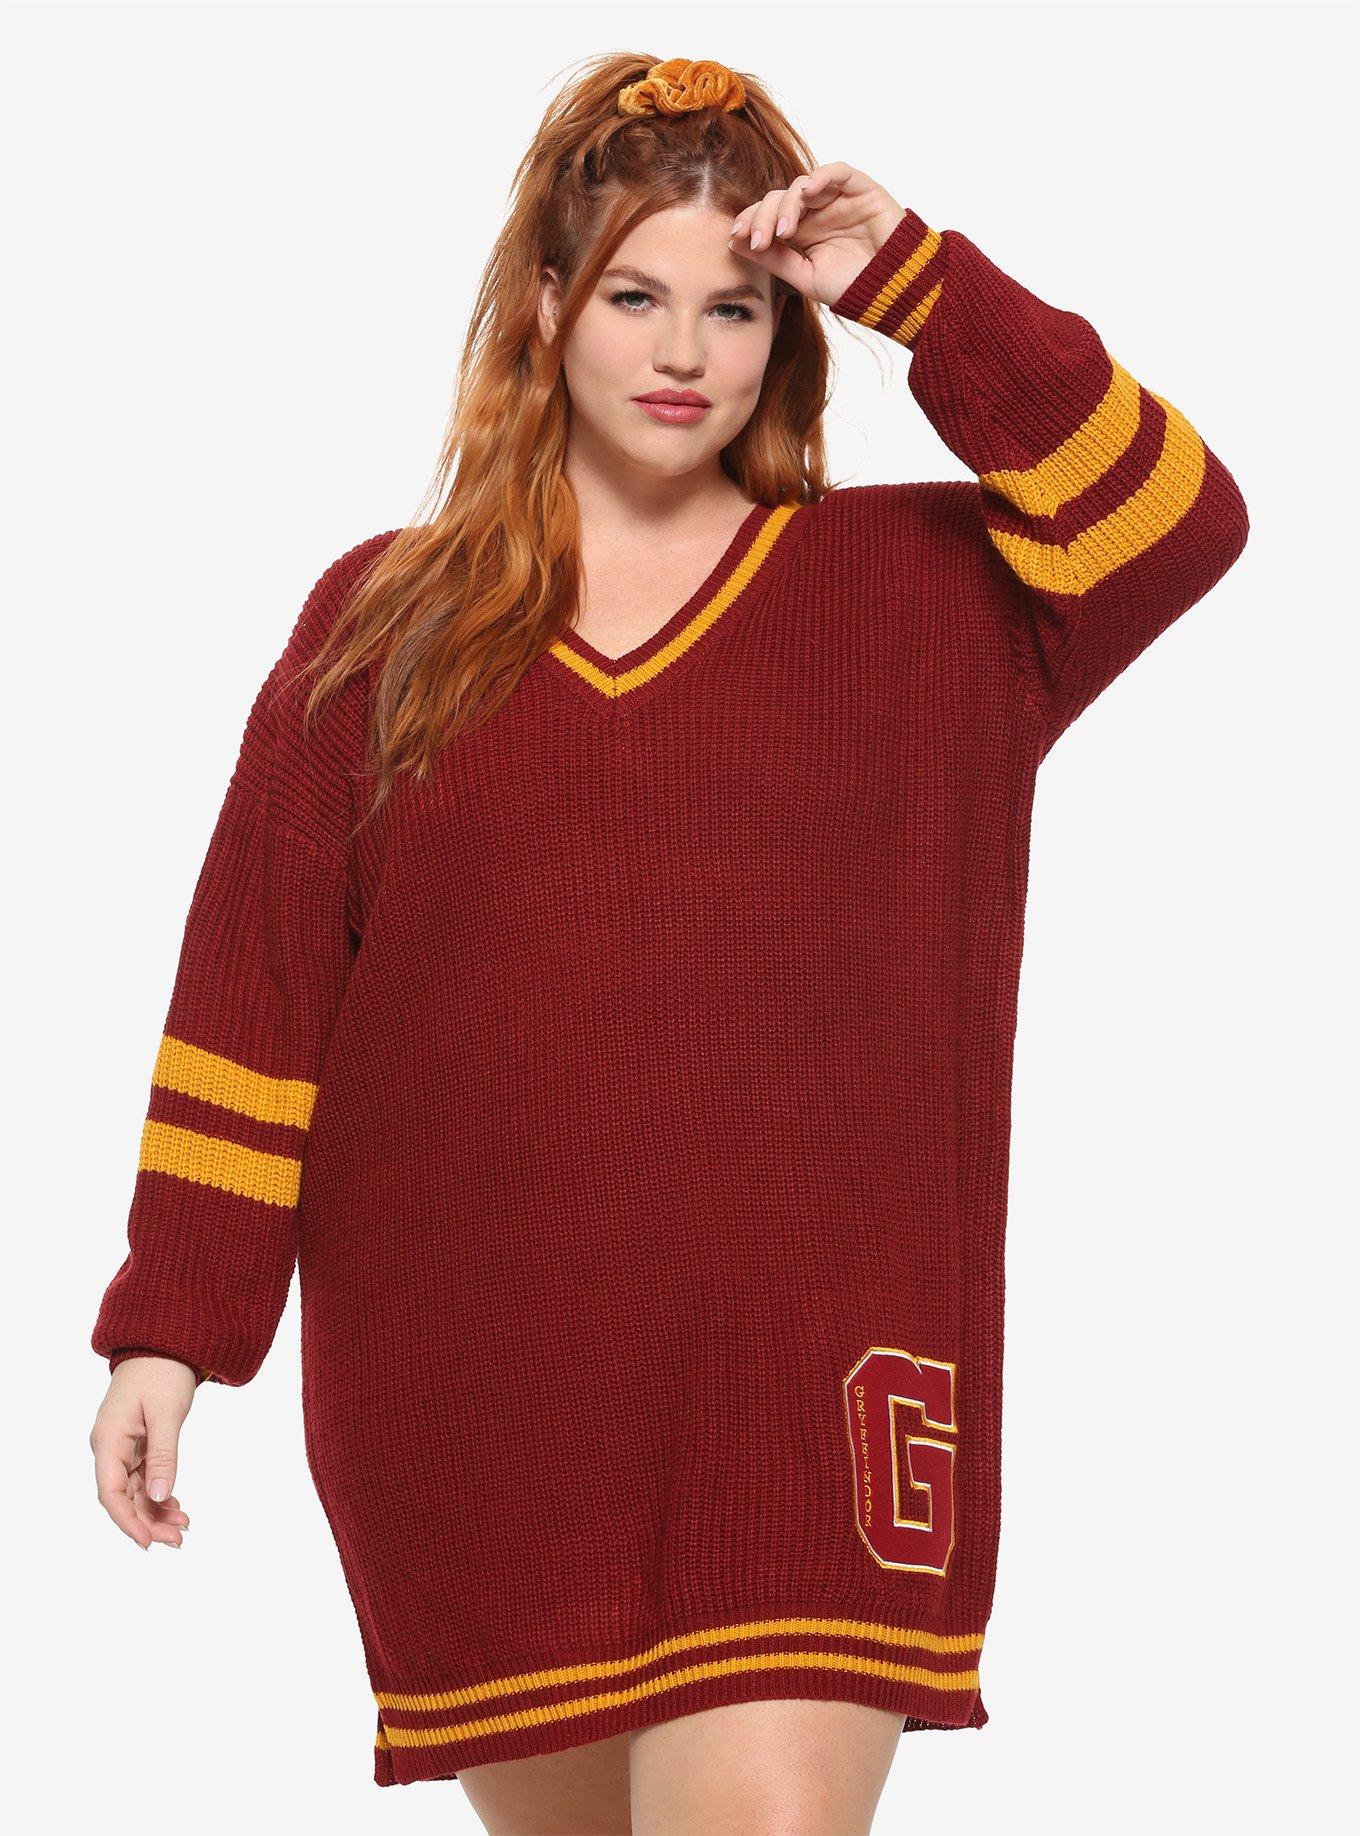 Harry Potter Gryffindor Sweater Dress Plus Size, BURGUNDY, hi-res